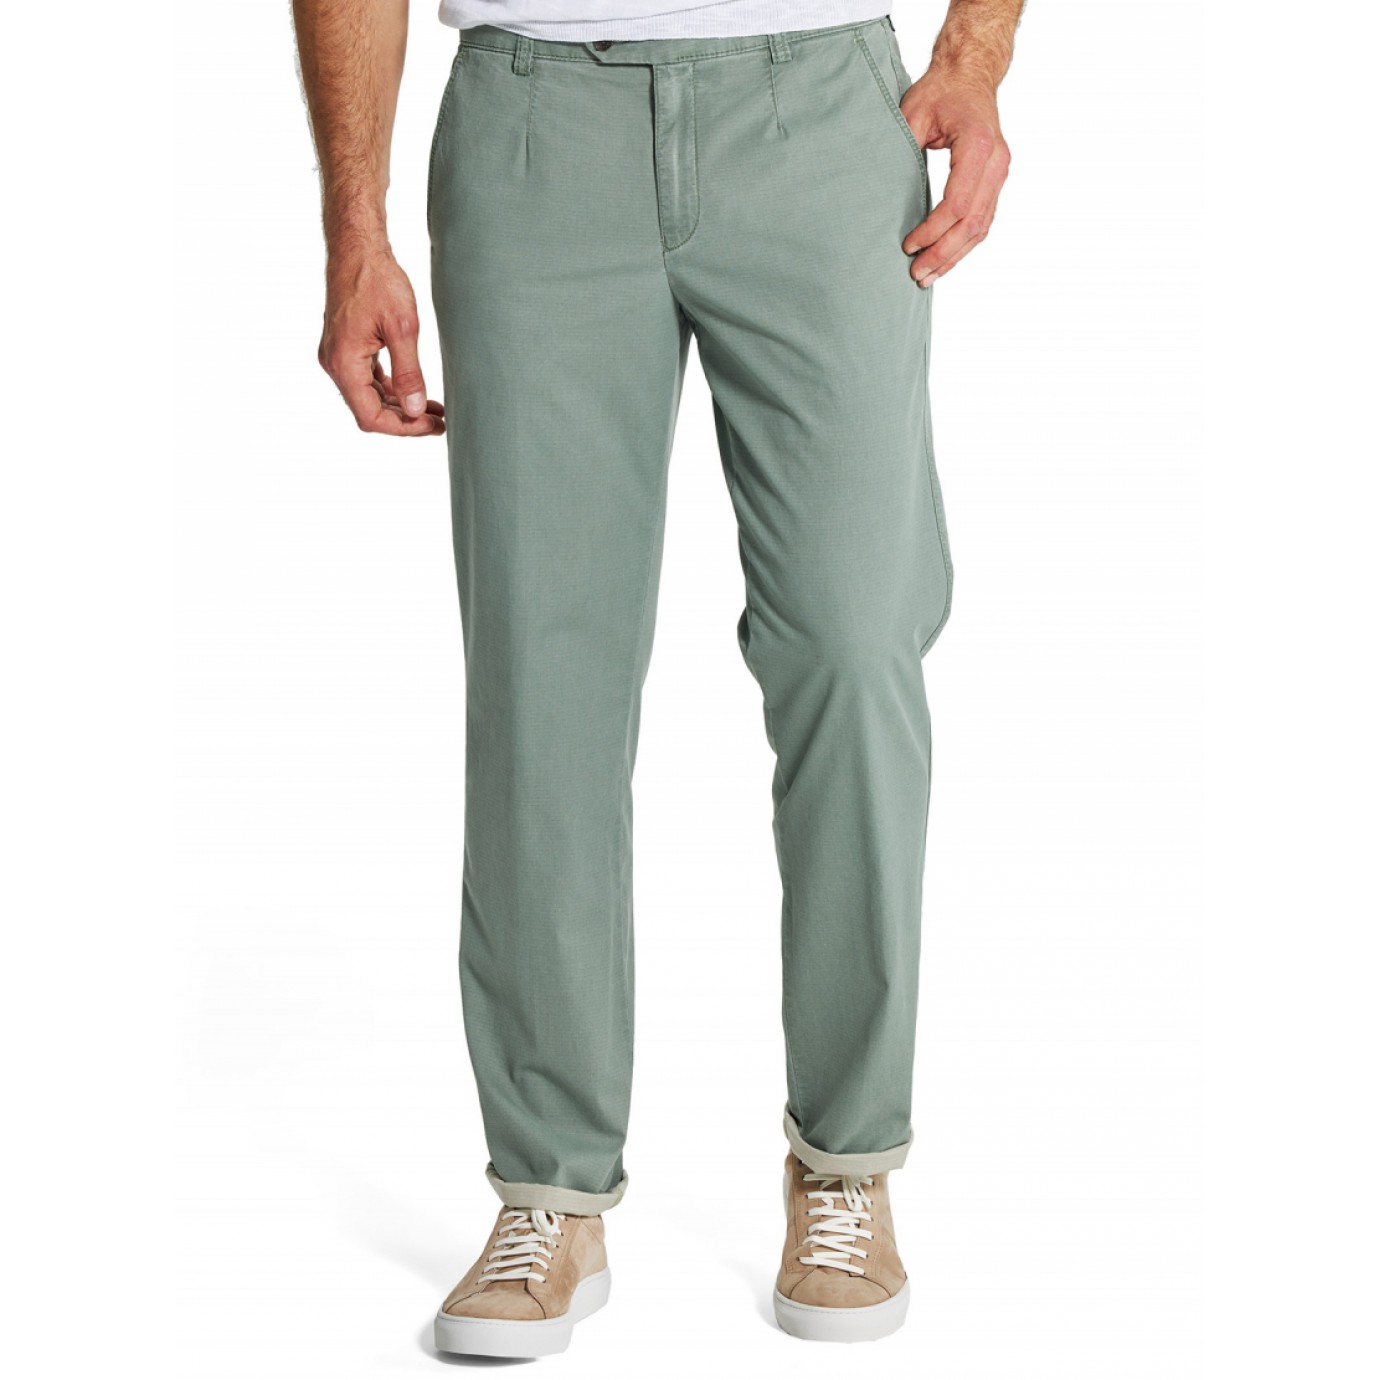 Хлопковые мужские брюки Meyer, модель Monza 5-401/26, цвет зеленый купить вМоскве в интернет-магазине SHOP4BIG - цена, фото, описание